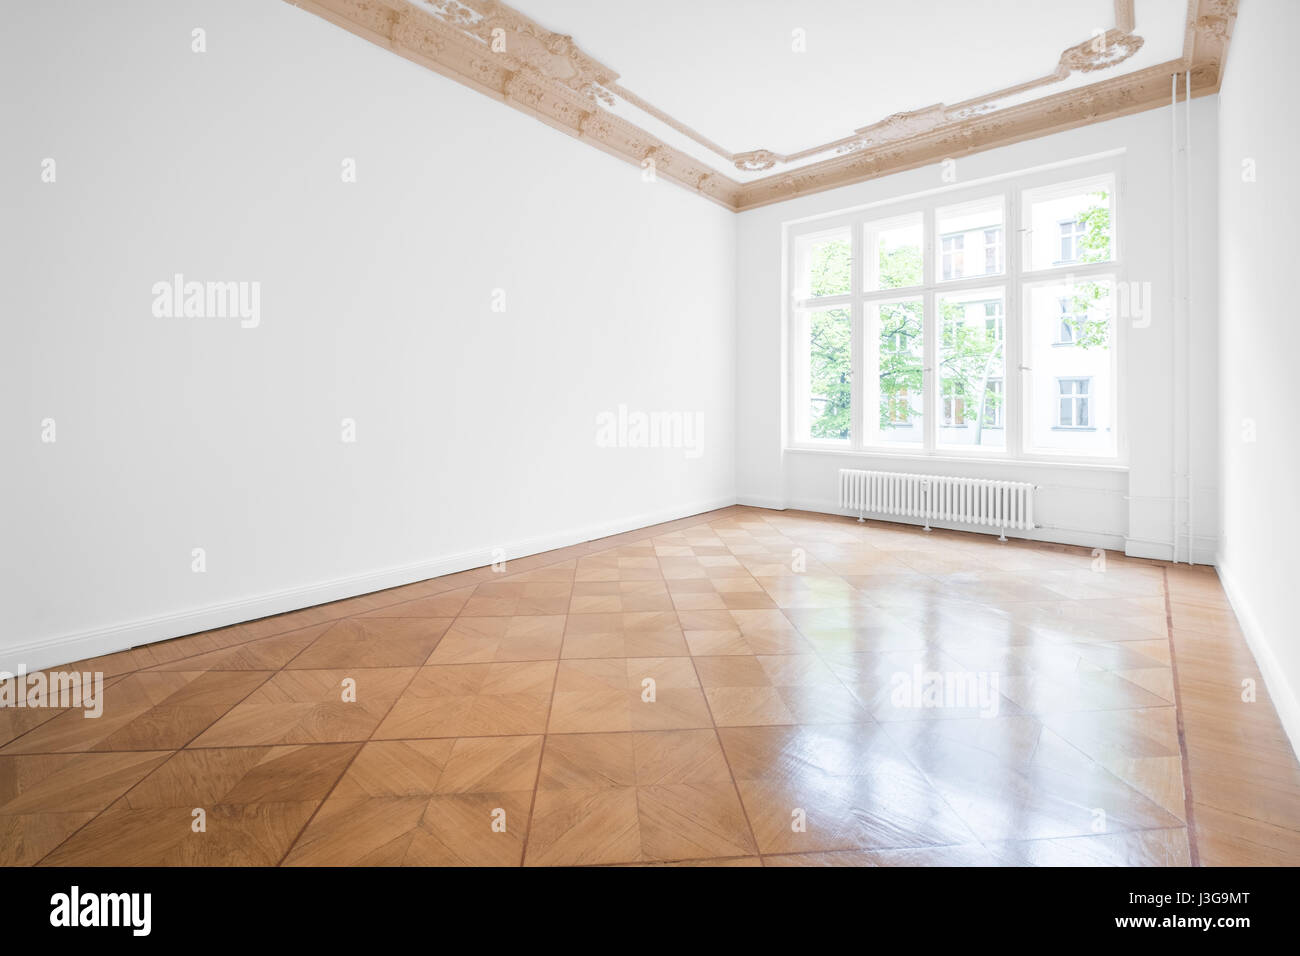 Salle vide avec parquet et plafond en stuc - nouveau rénové appartement dans immeuble ancien Banque D'Images